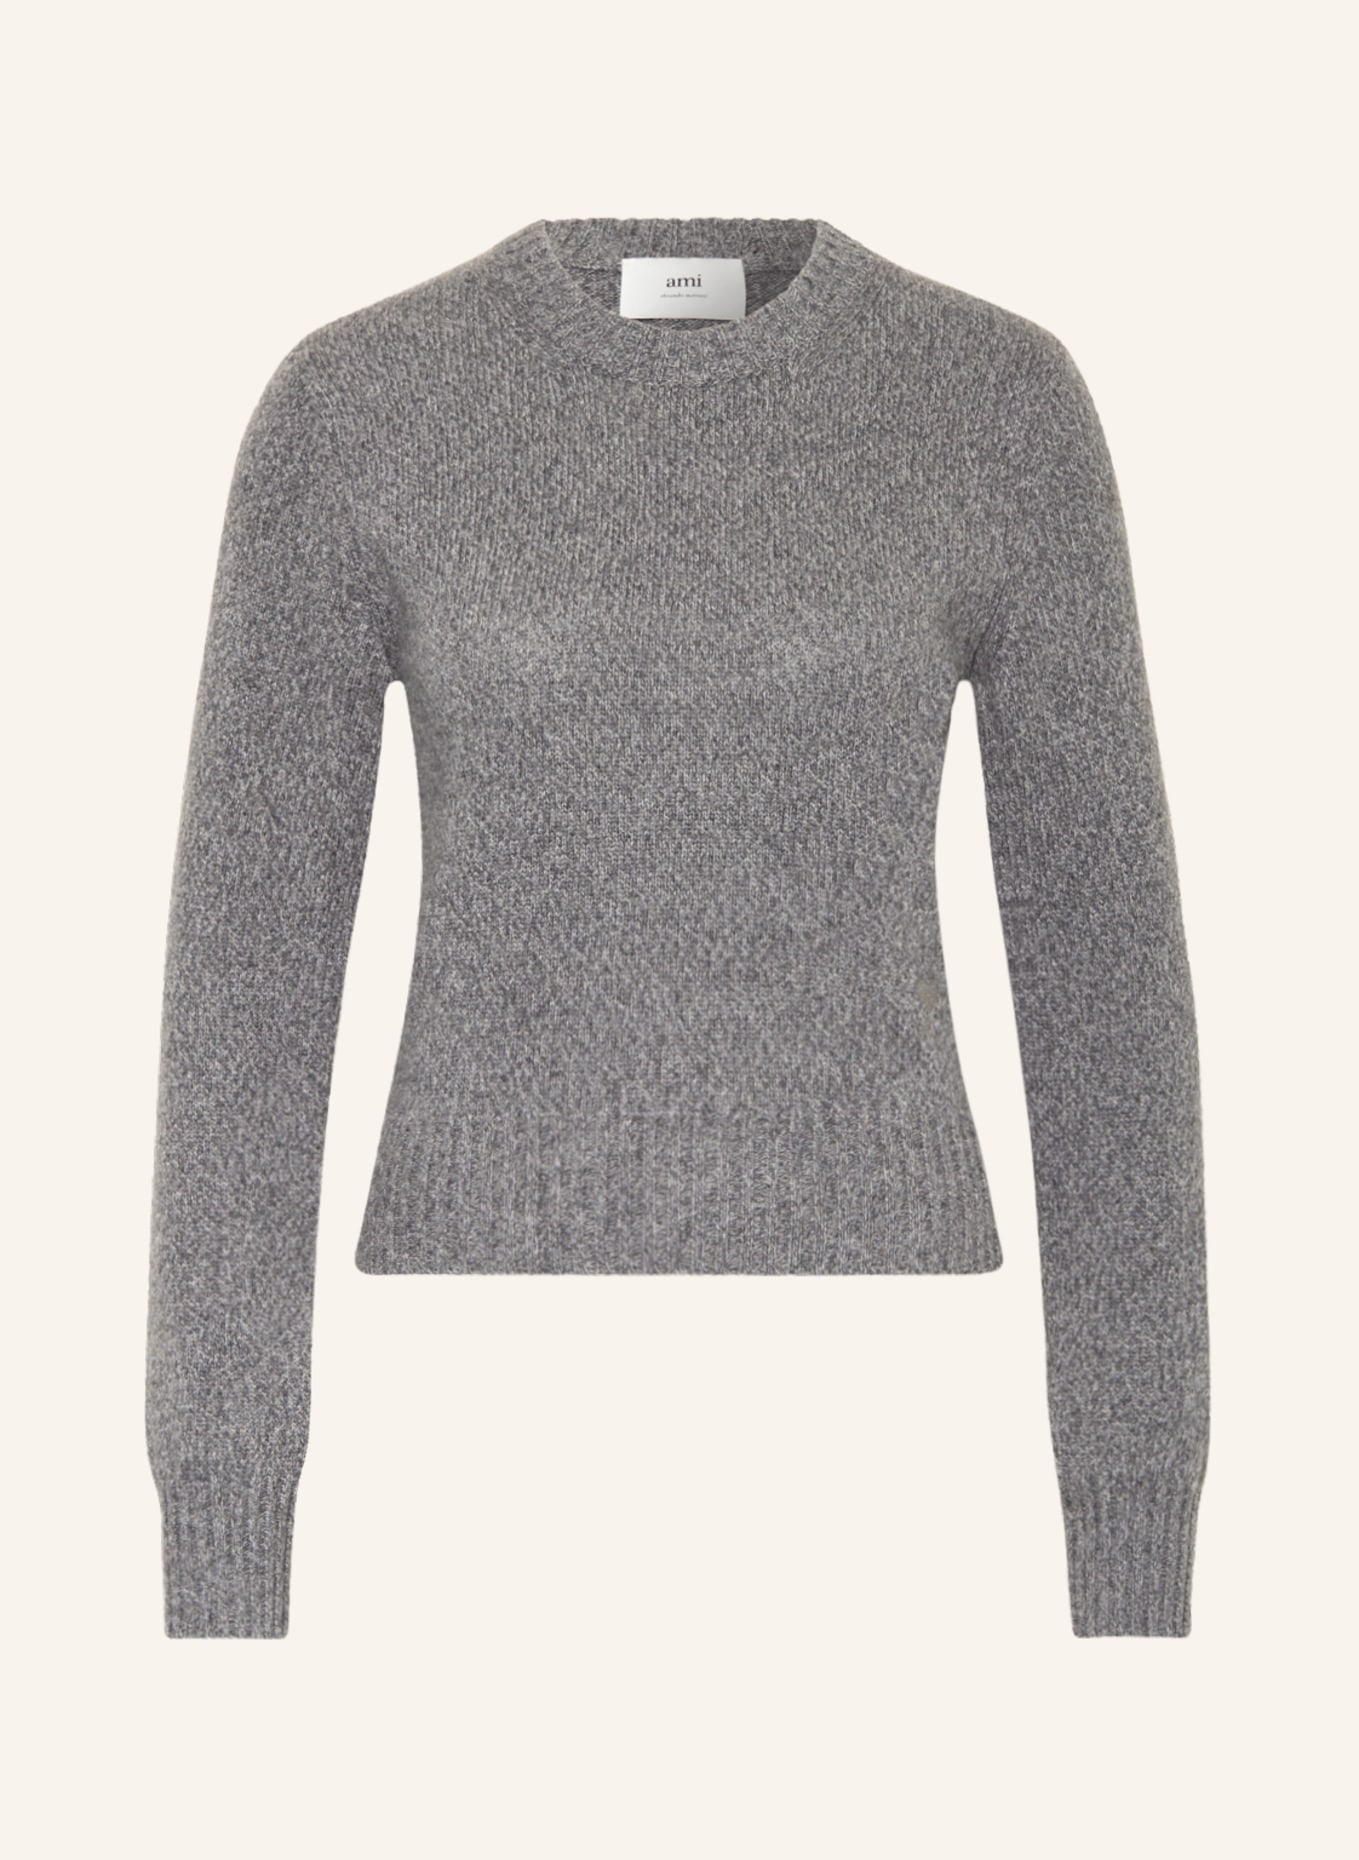 AMI PARIS Cashmere-Pullover, Farbe: GRAU (Bild 1)